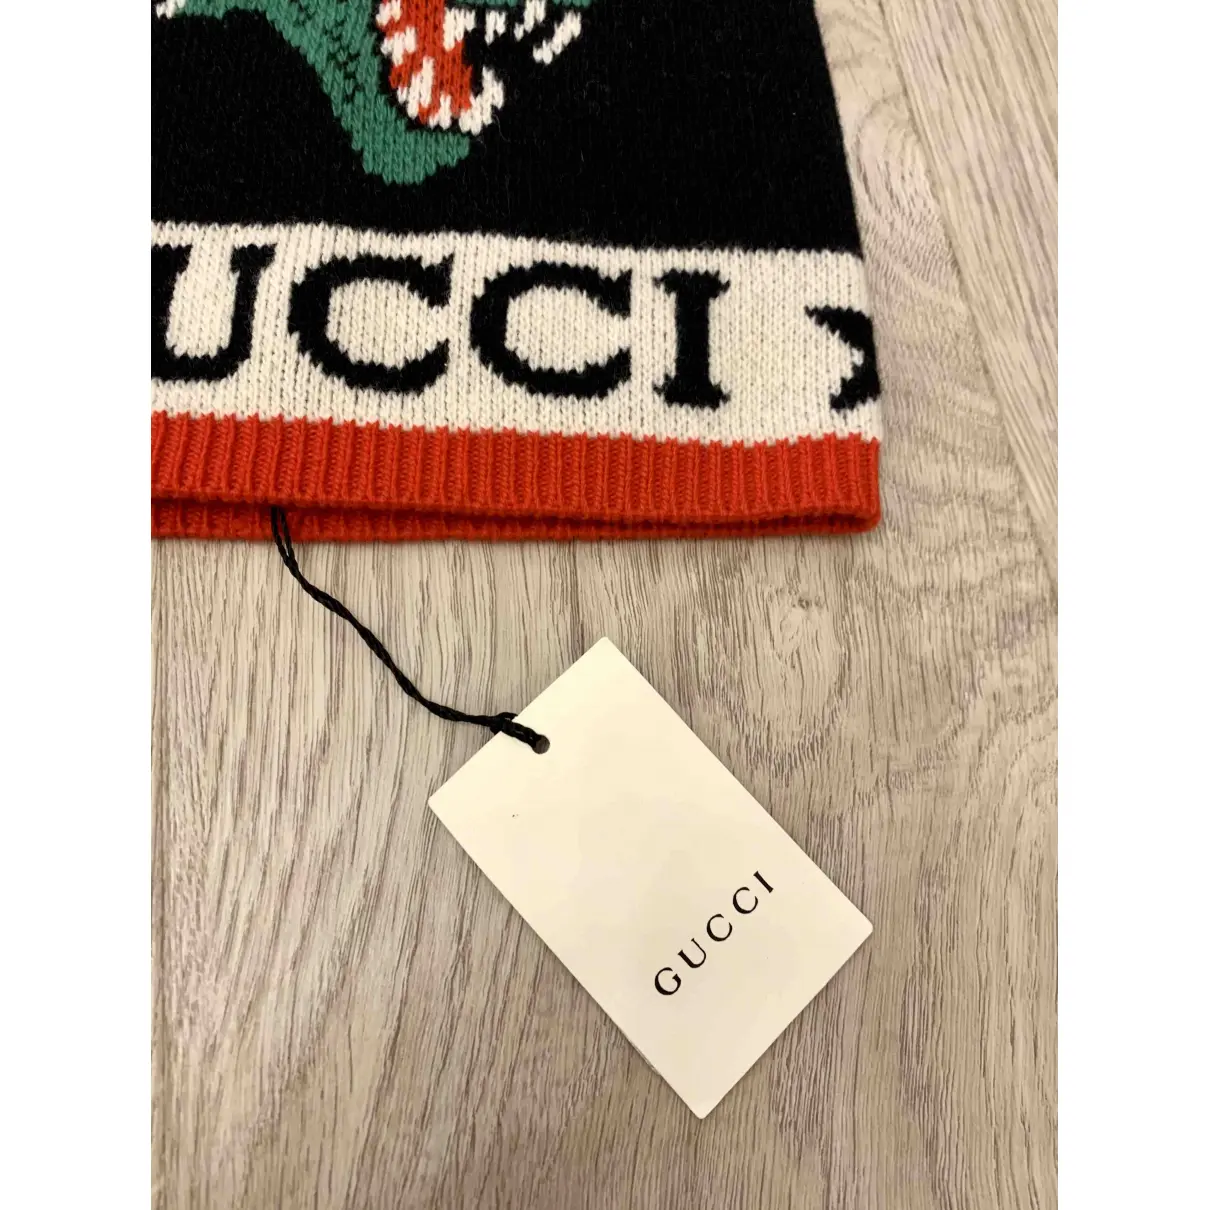 Wool hat Gucci